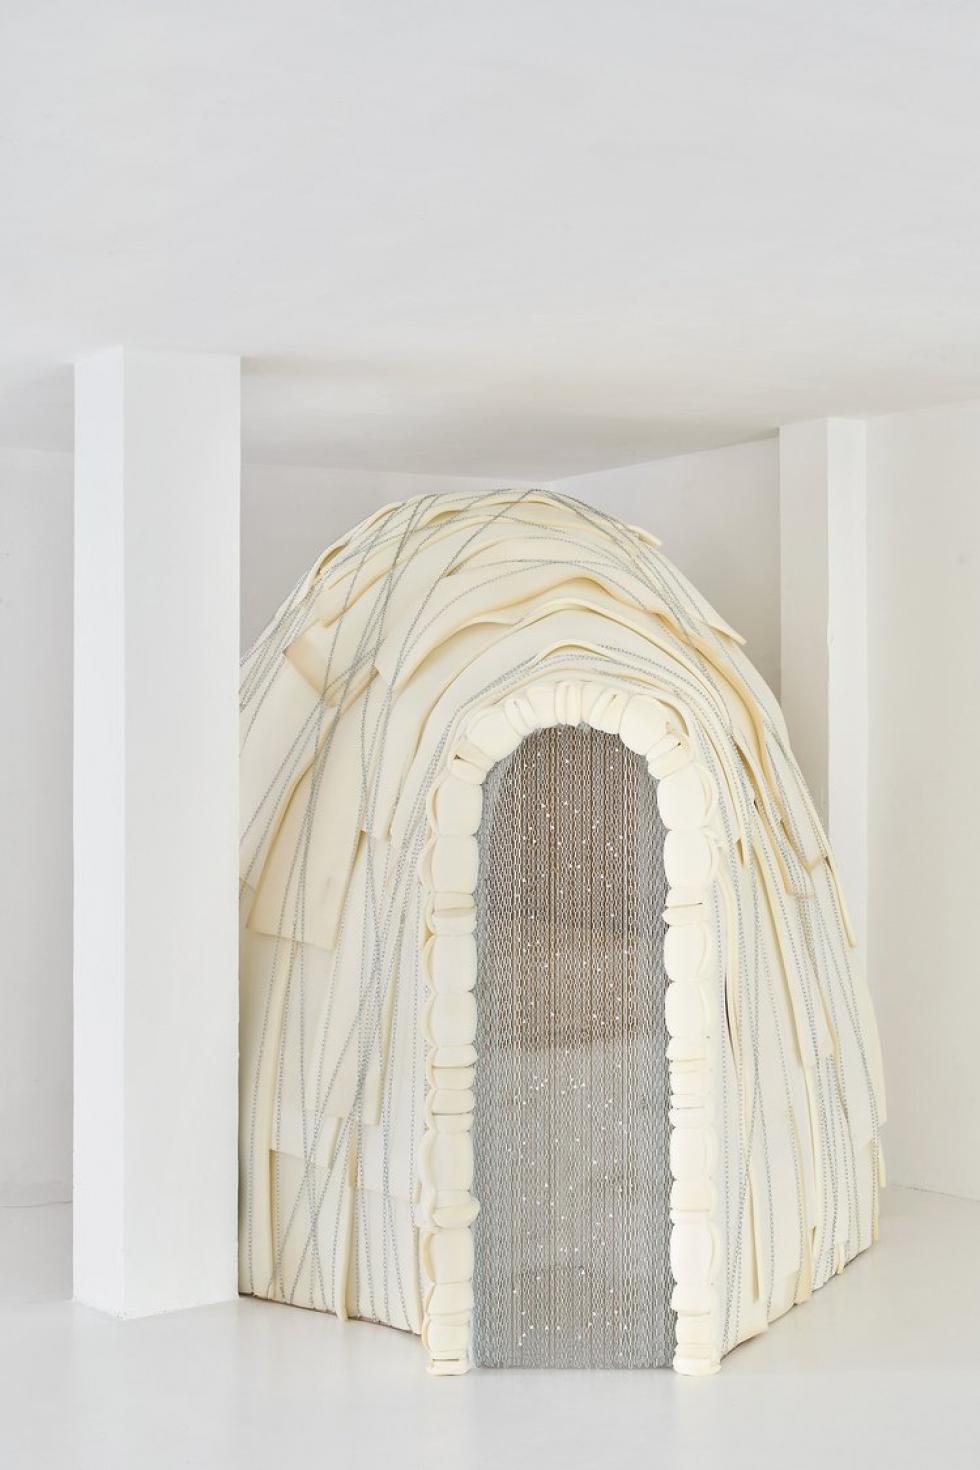 Spanyol építészek egy hangulatos iglut terveztek a lányuk hálószobájaként